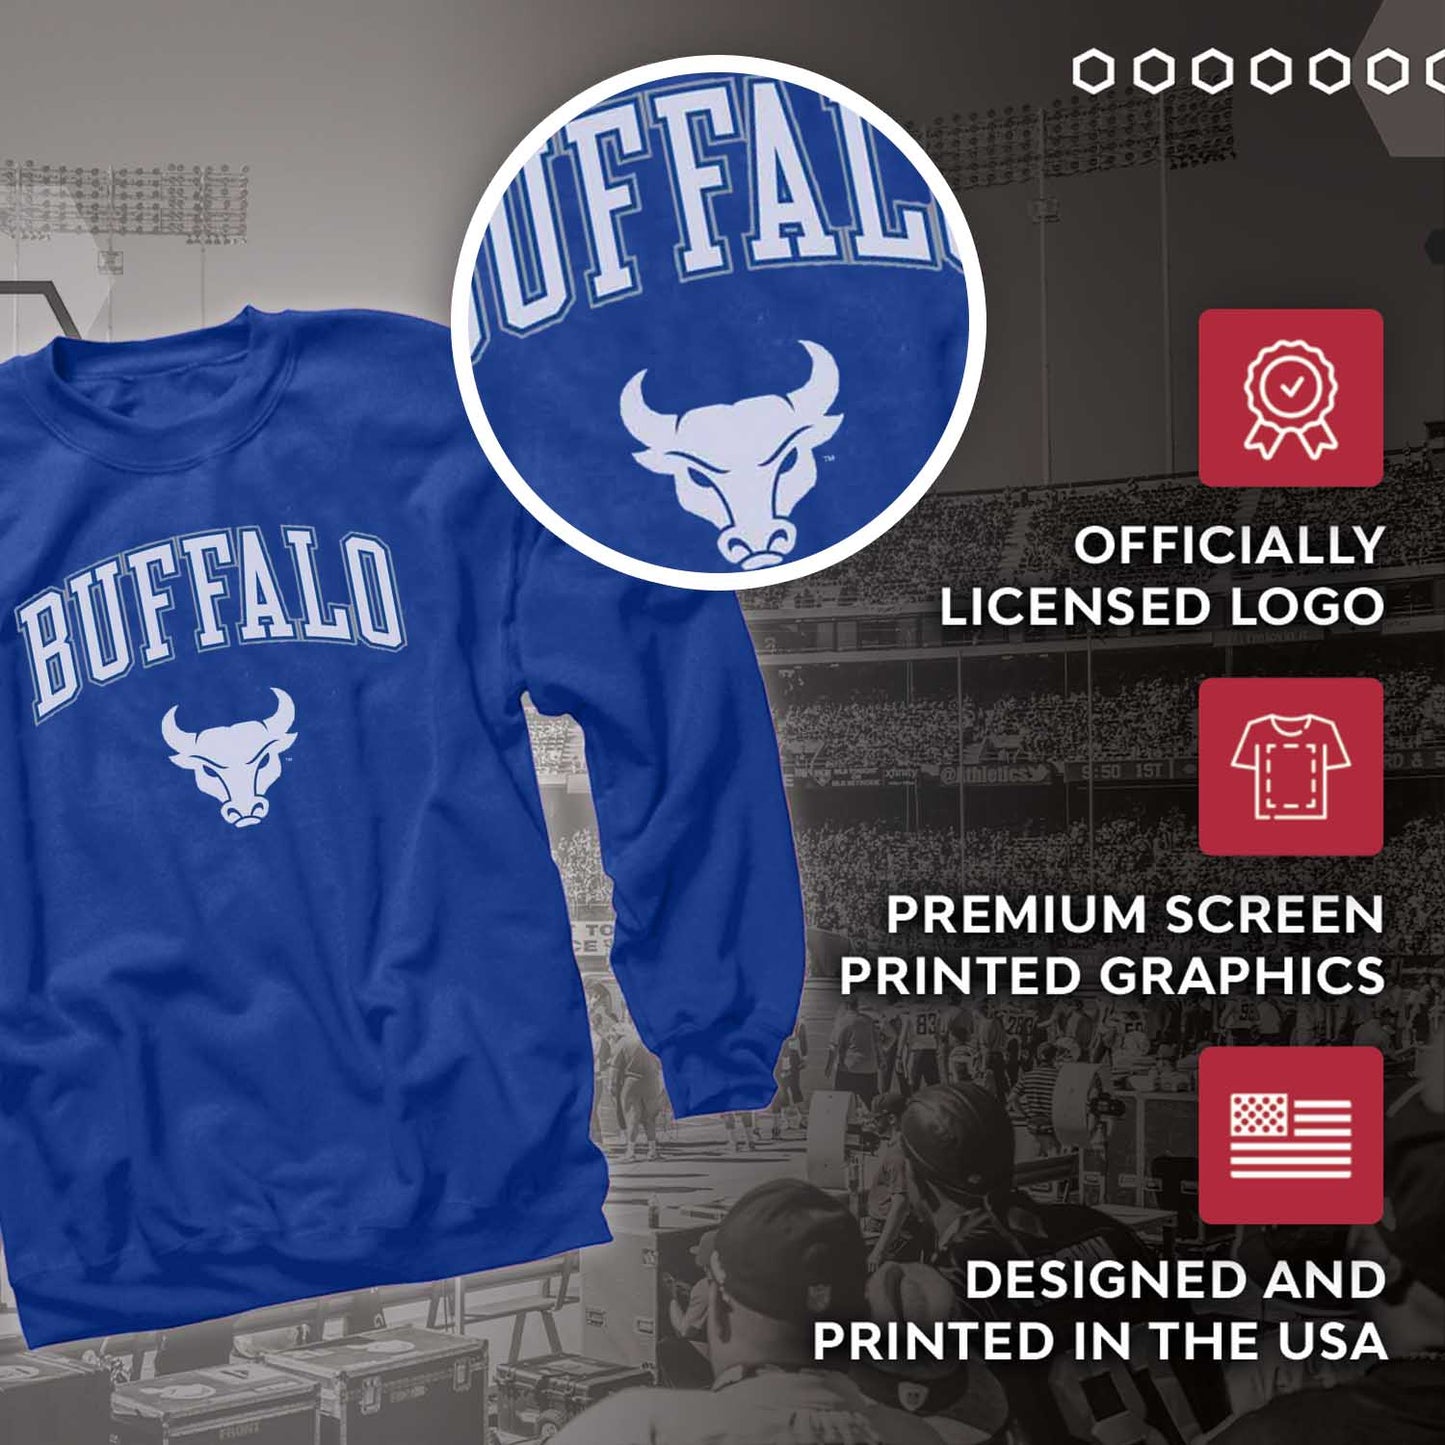 Buffalo Bulls Adult Arch & Logo Soft Style Gameday Crewneck Sweatshirt - Royal